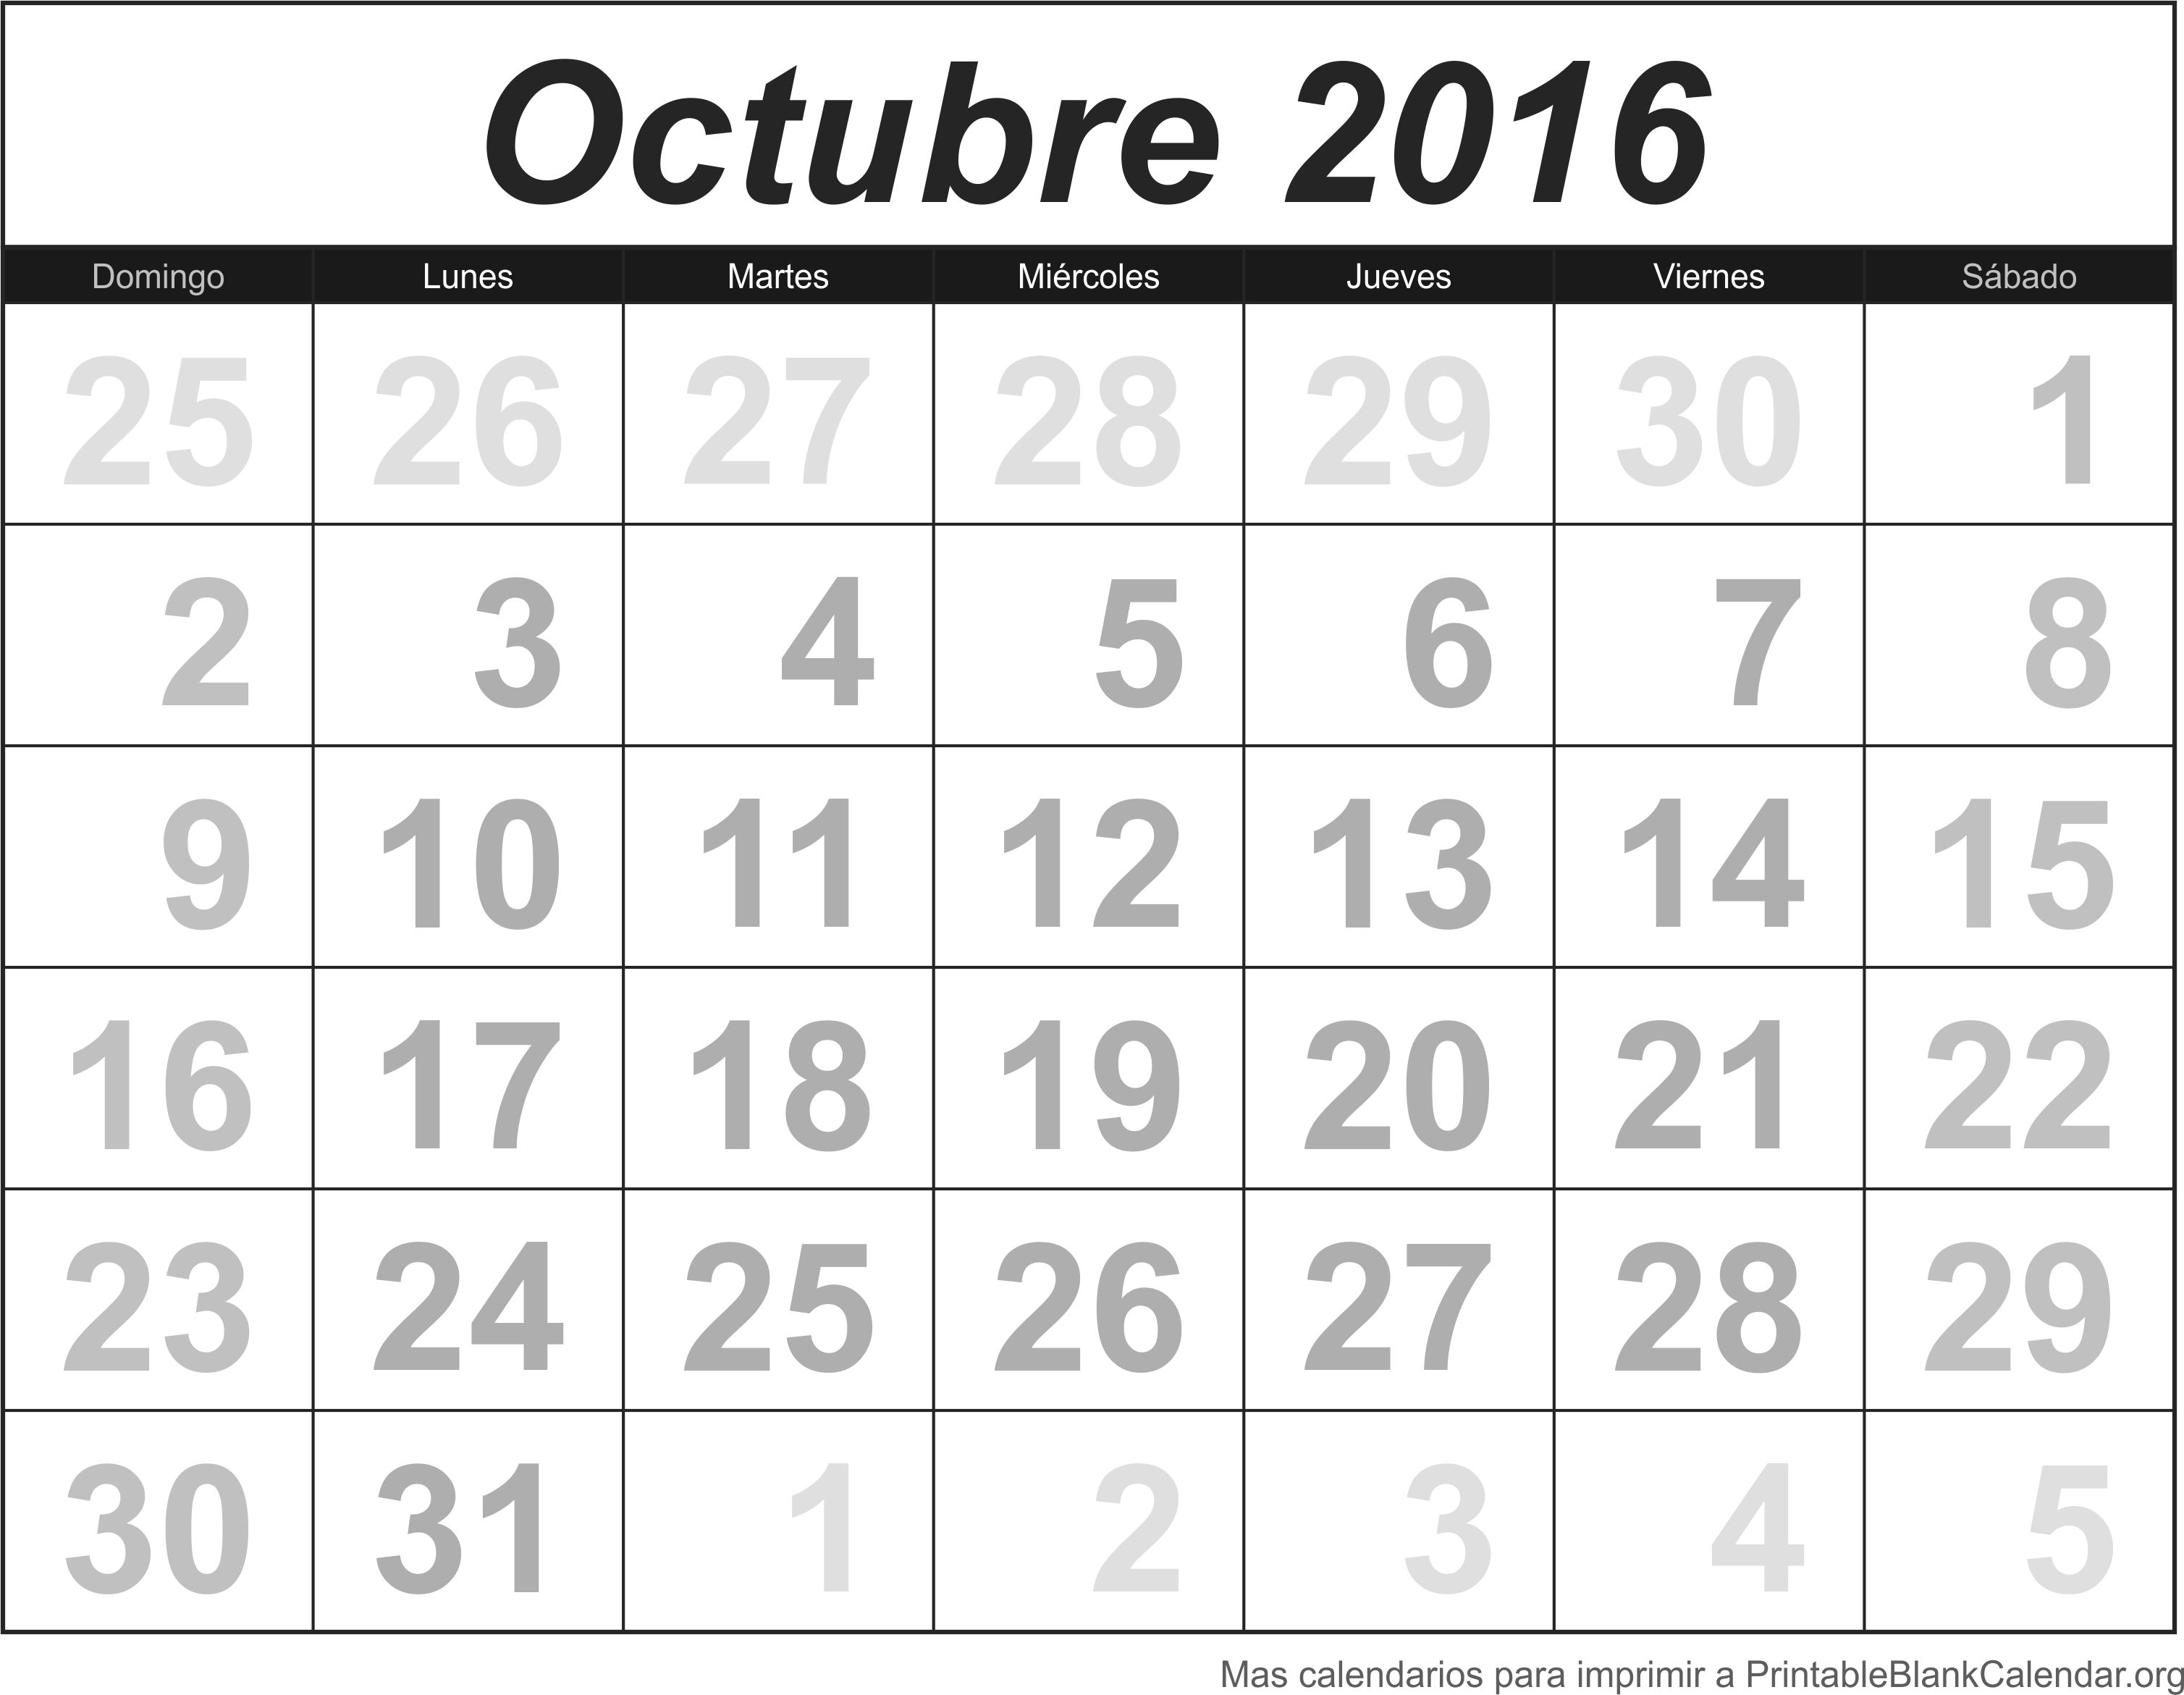 Calendario Oct 2016 para imprimir